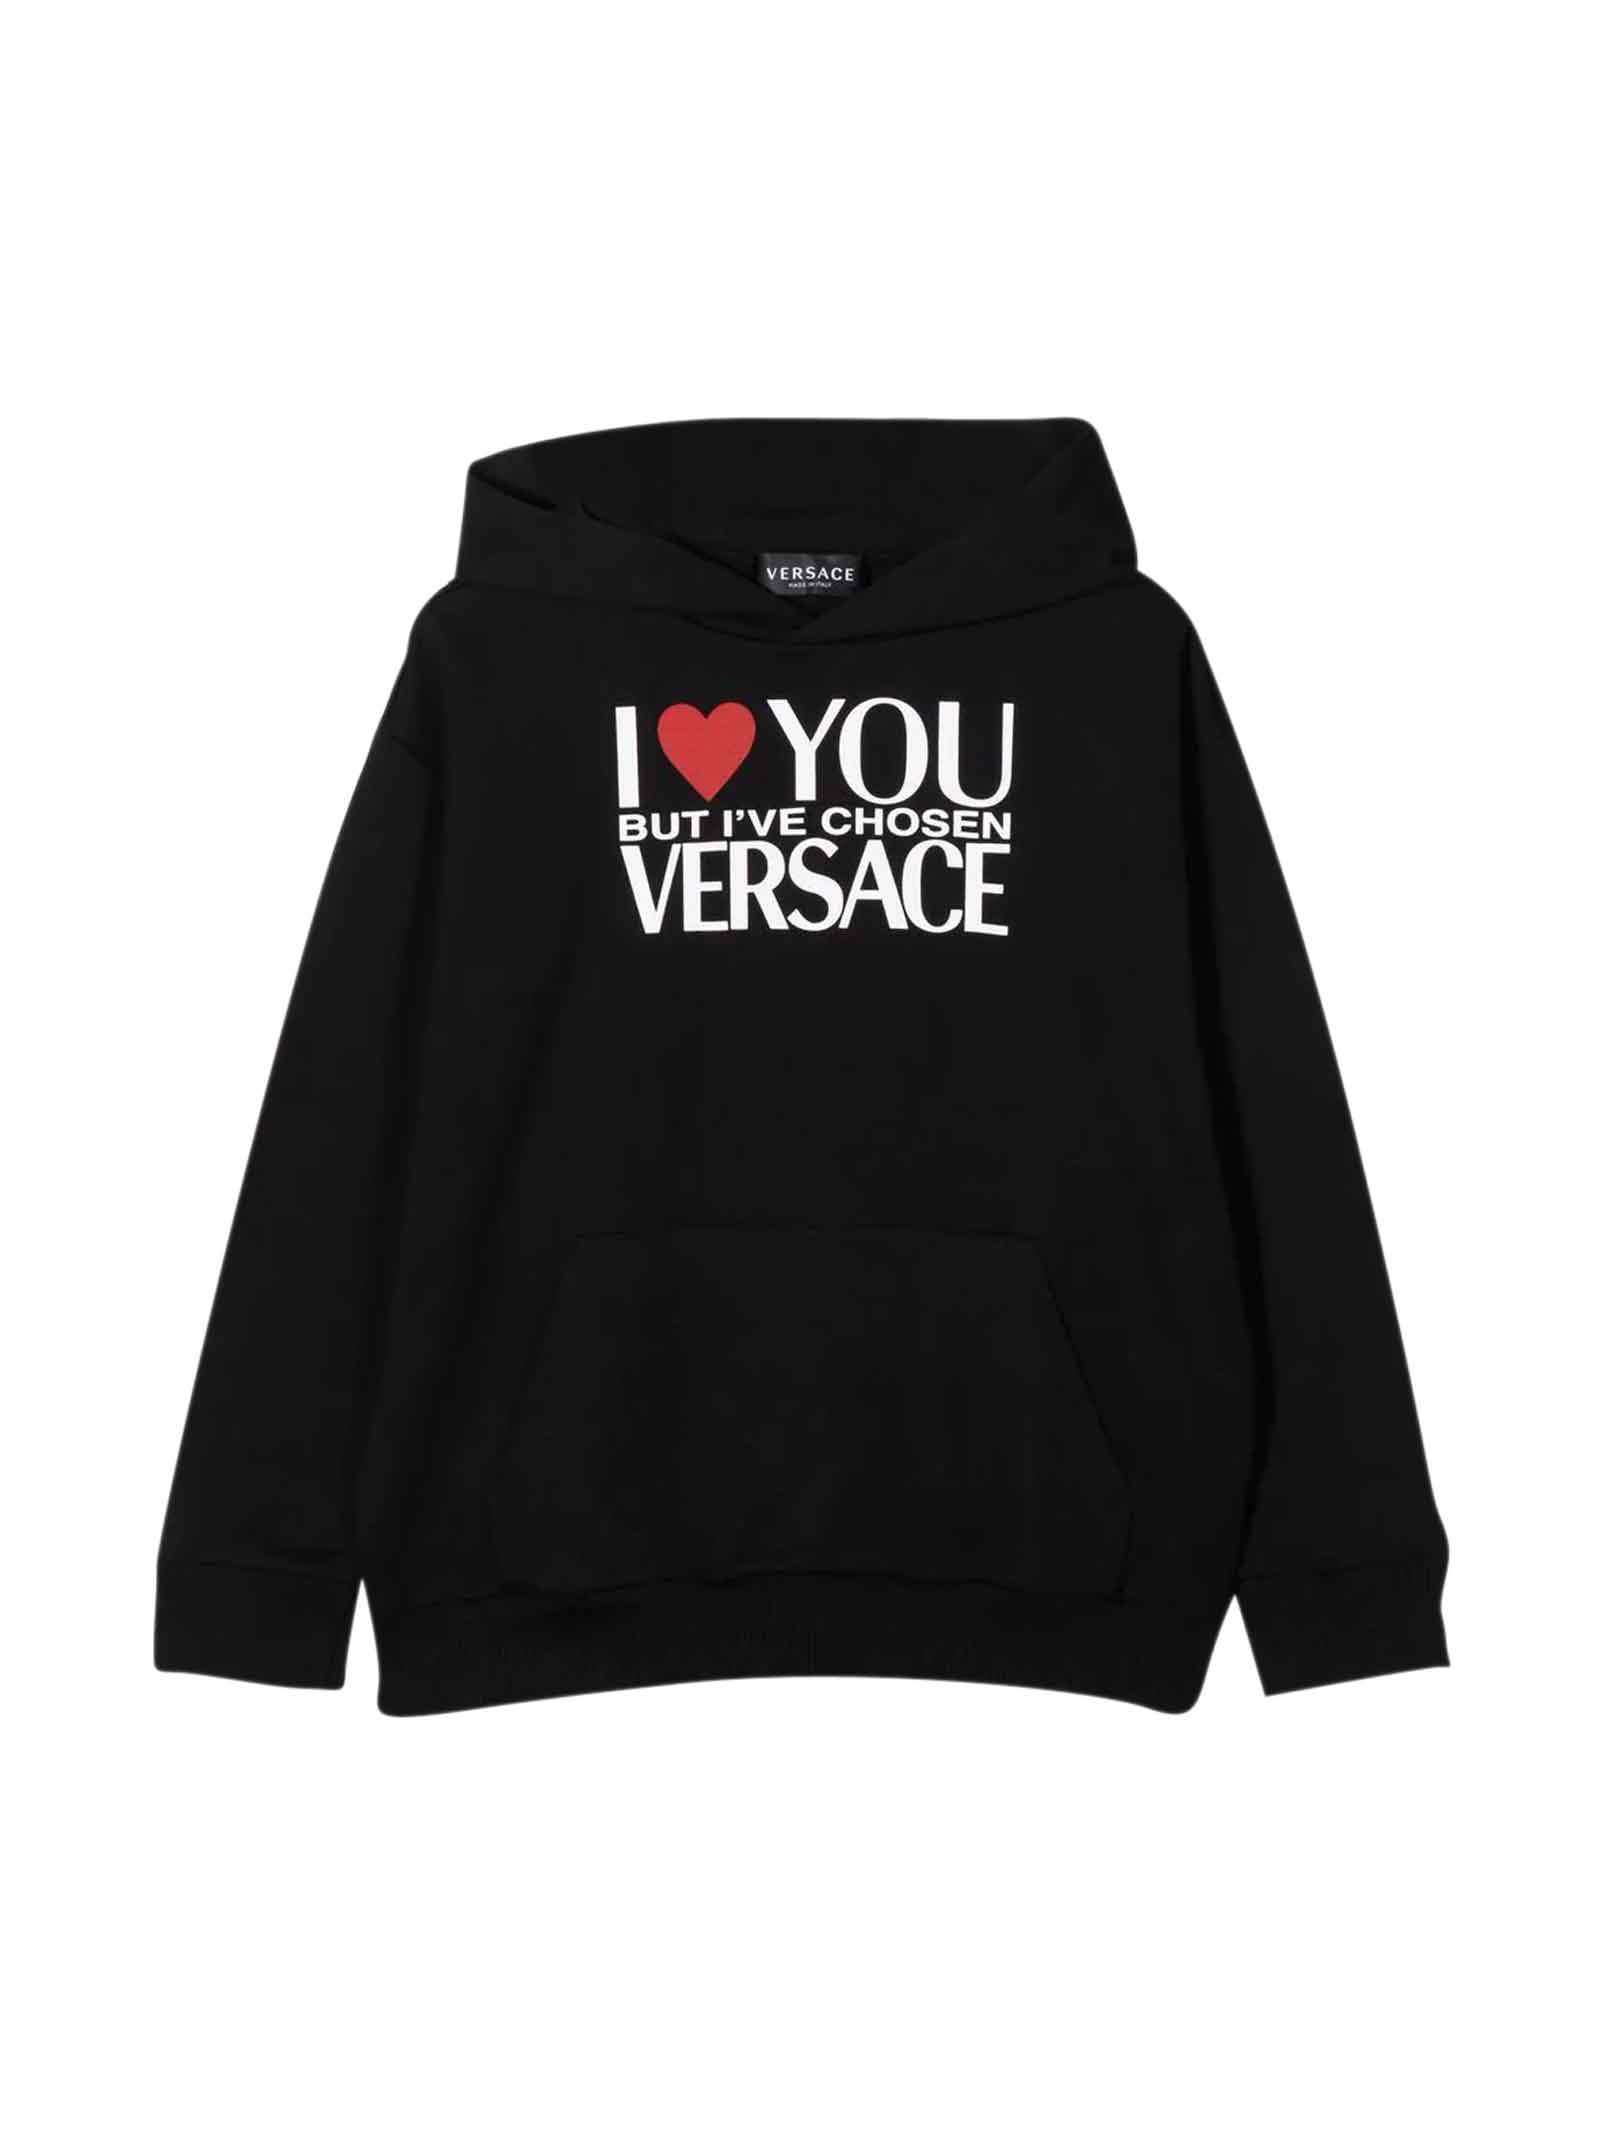 Young Versace Black Sweatshirt Unisex Kids